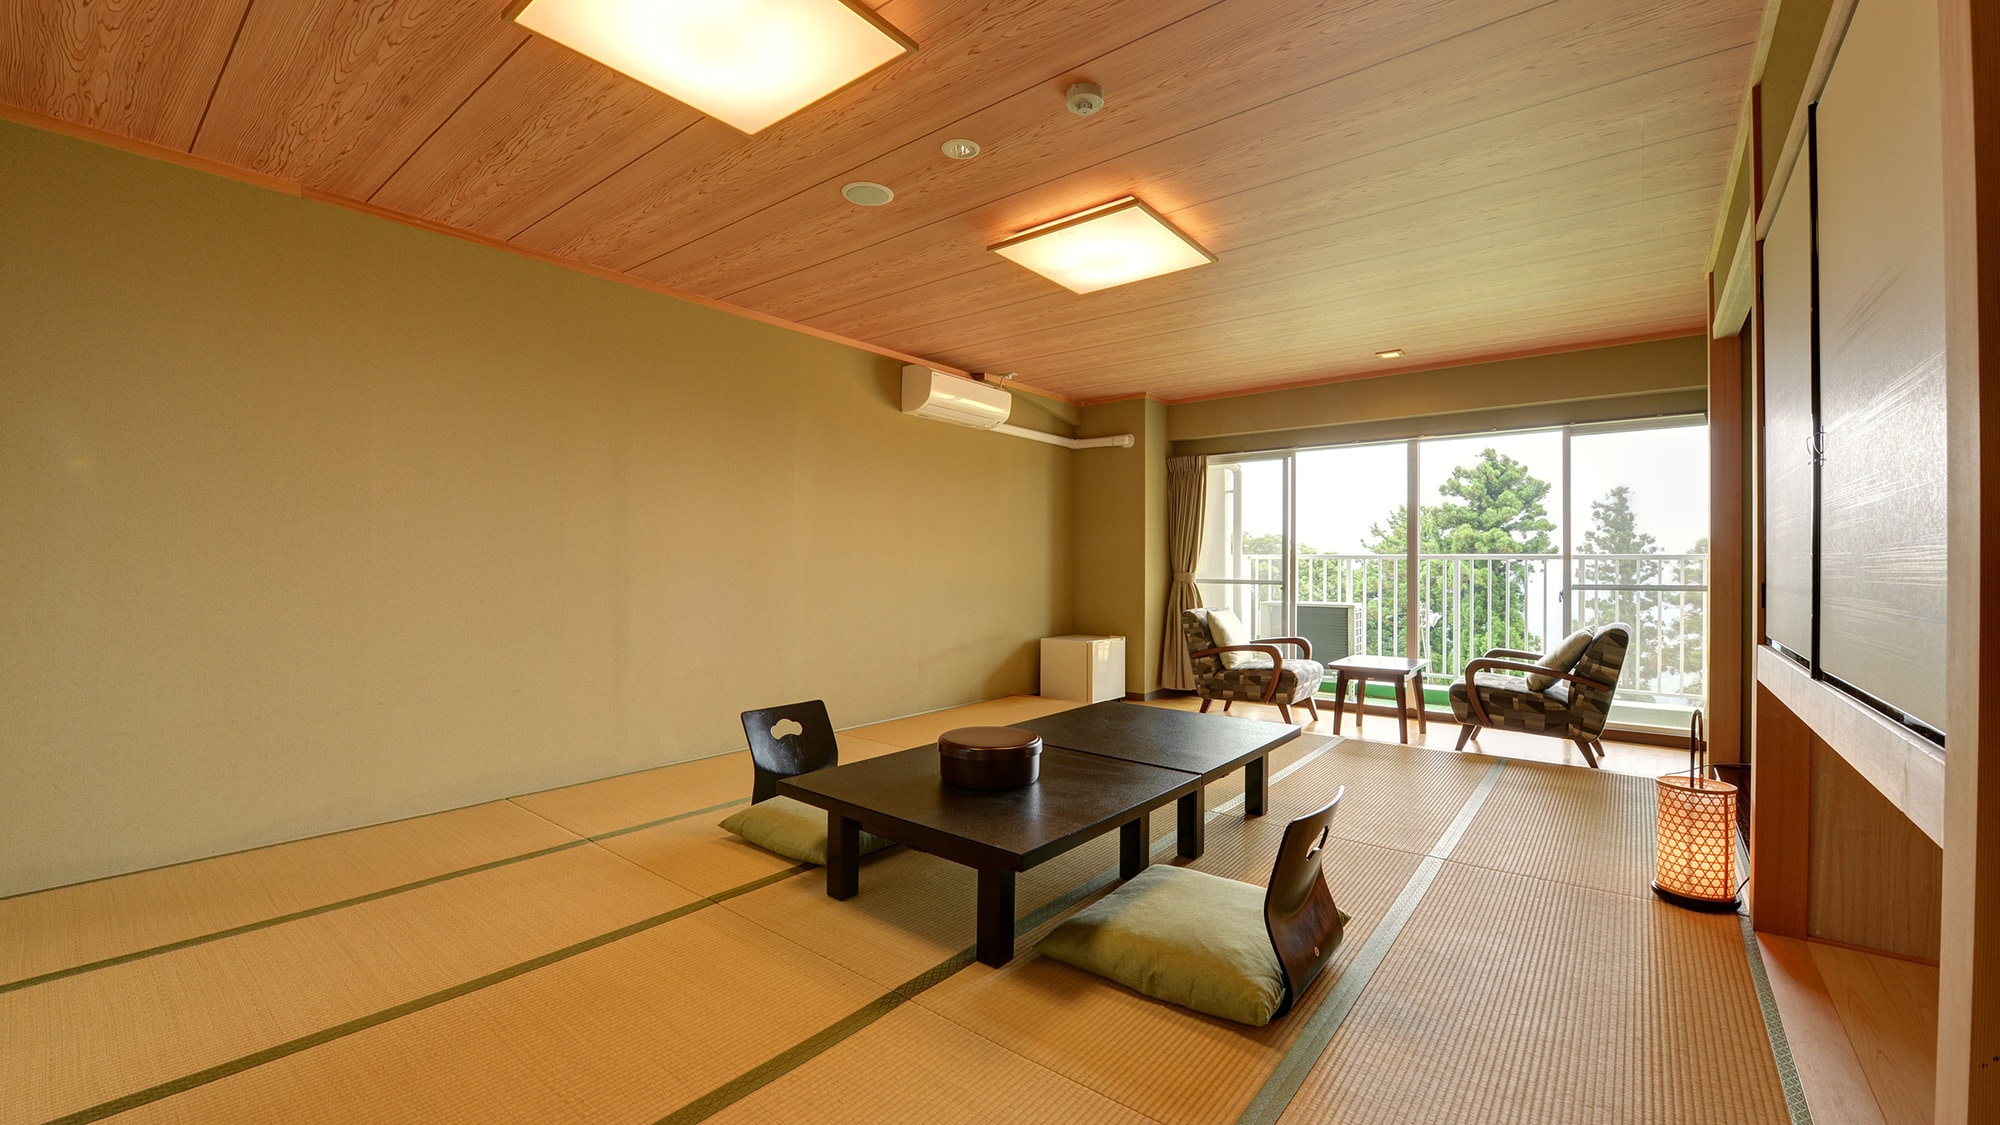 * ห้องสไตล์ญี่ปุ่น อาคารทิศตะวันออก (ตัวอย่างห้องพักแขก) / เที่ยวให้สนุกพักผ่อนอย่างสงบสุข